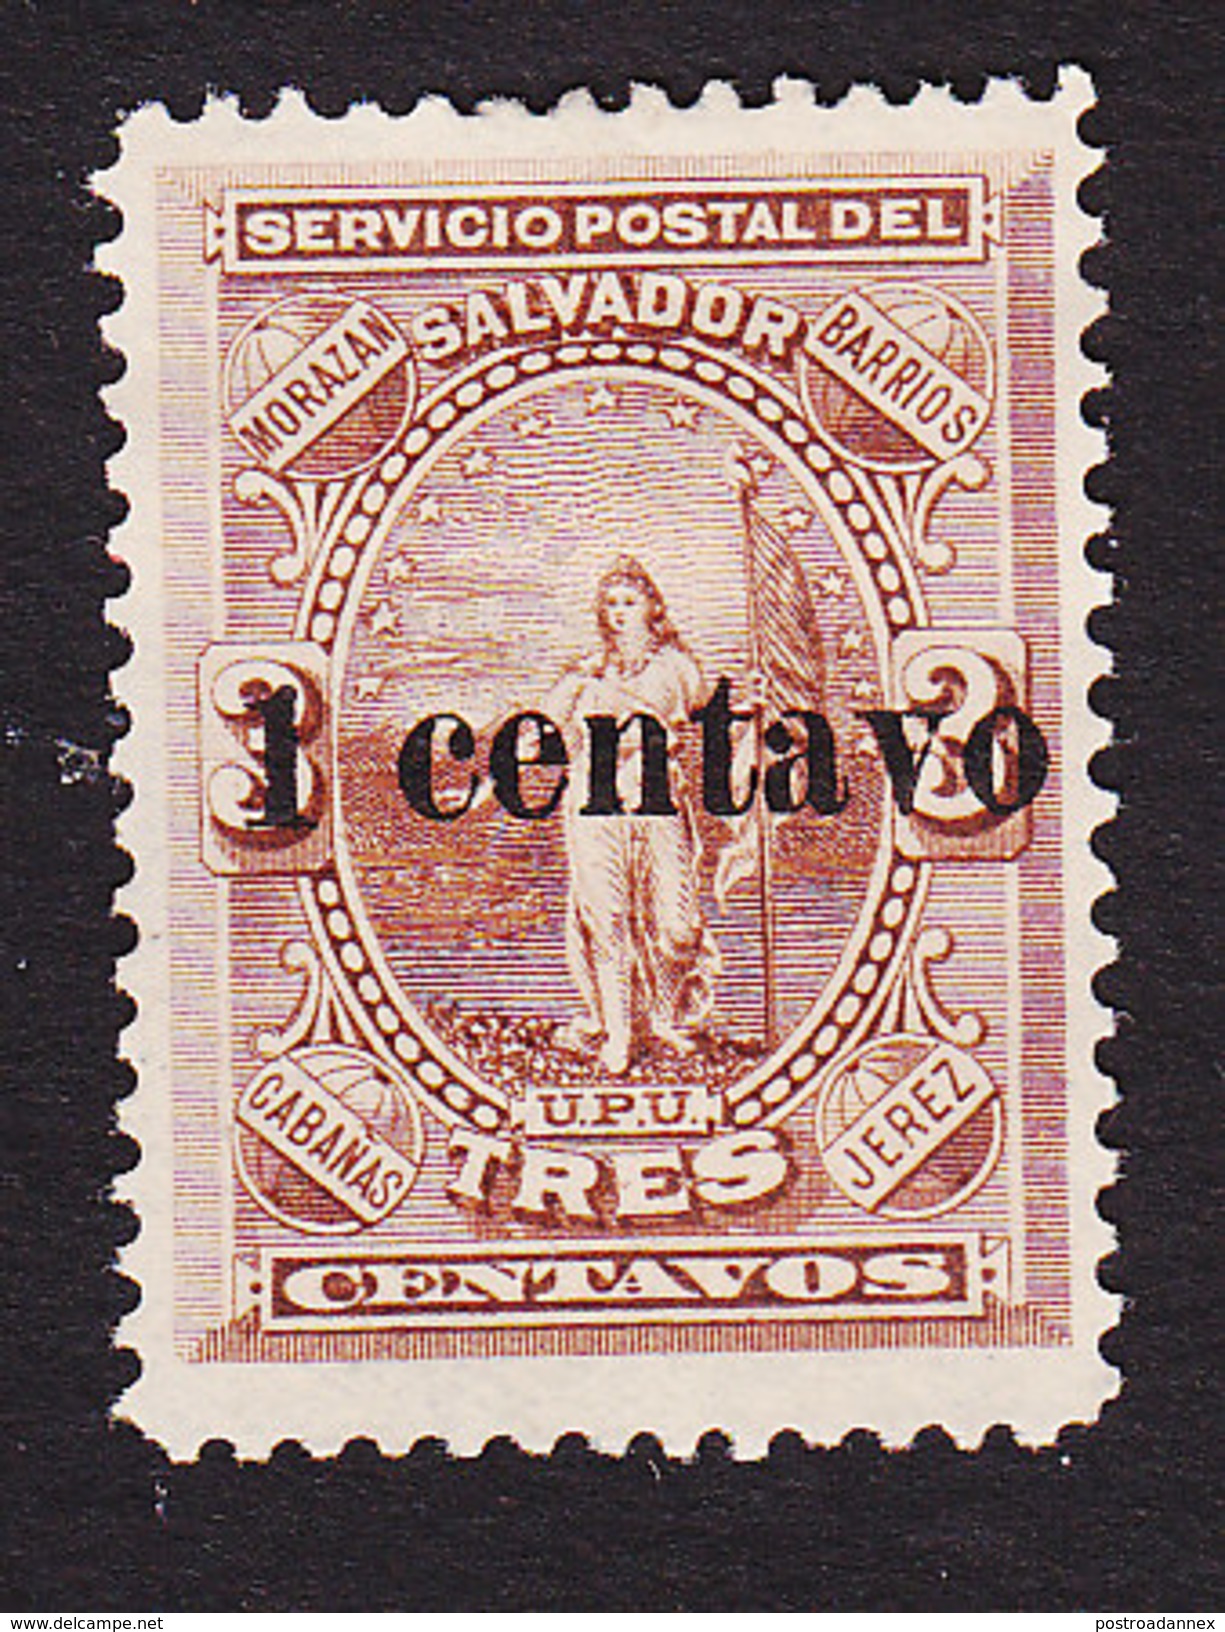 El Salvador, Scott #25, Mint No Gum, Figure Of El Salvador Surcharged, Issued 1889 - Salvador